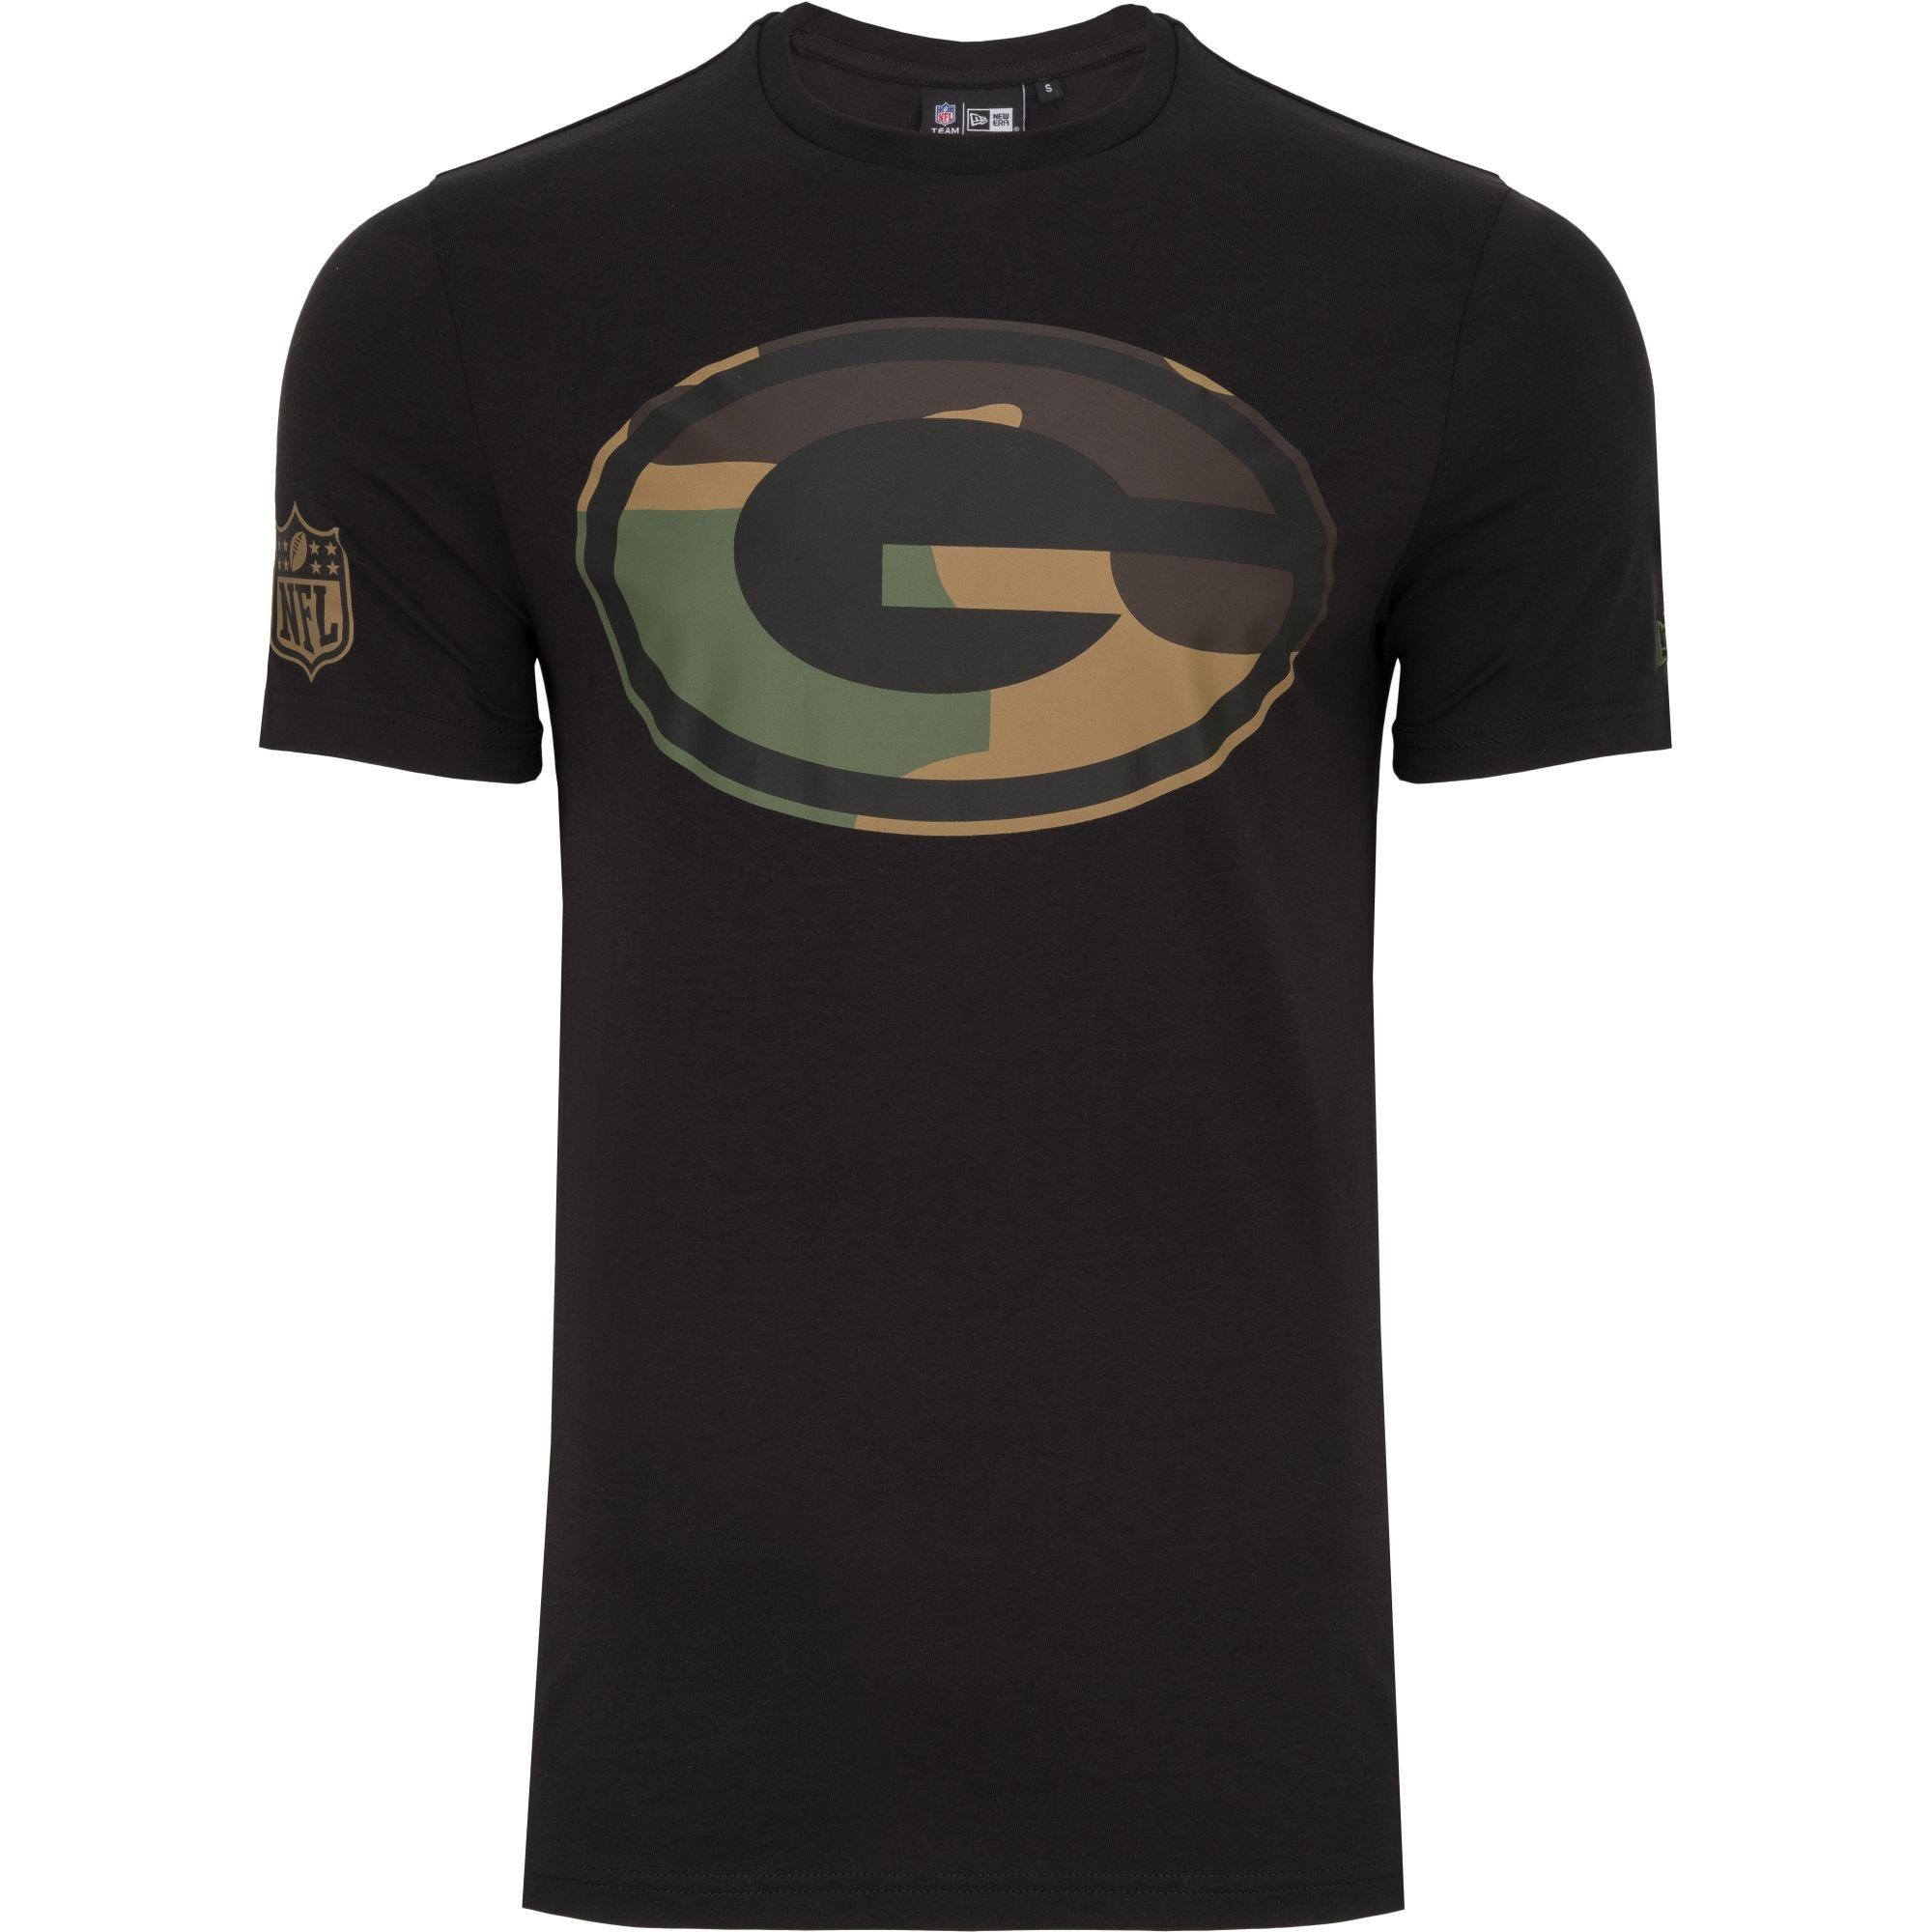 New Era Print-Shirt Football NFL 2.0 Green Bay Teams Packers